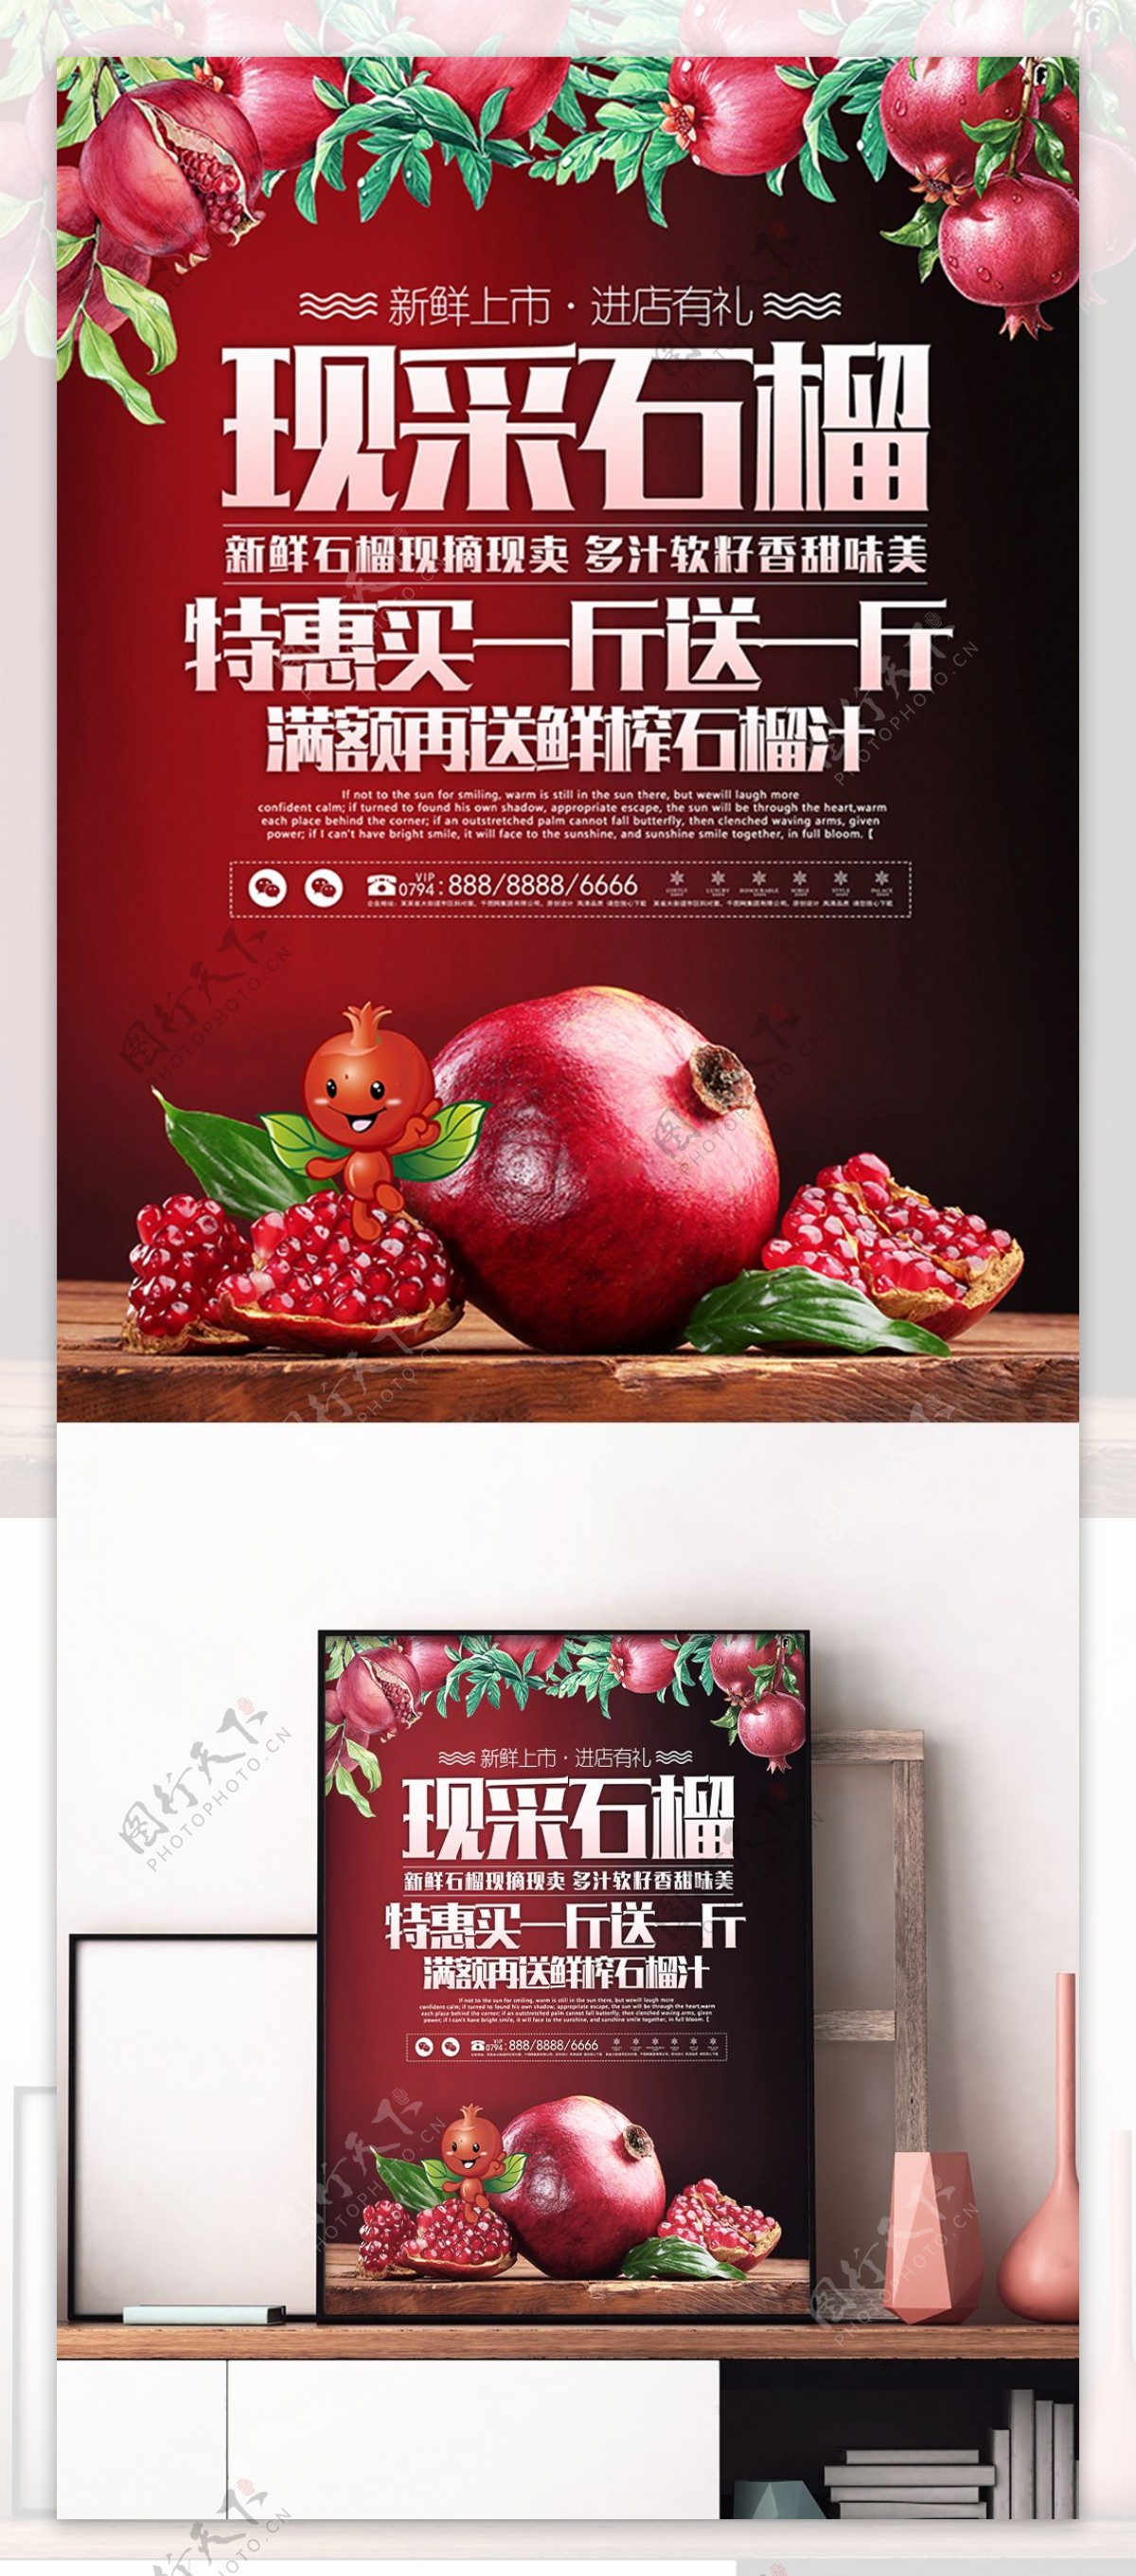 新鲜石榴美食水果宣传促销海报